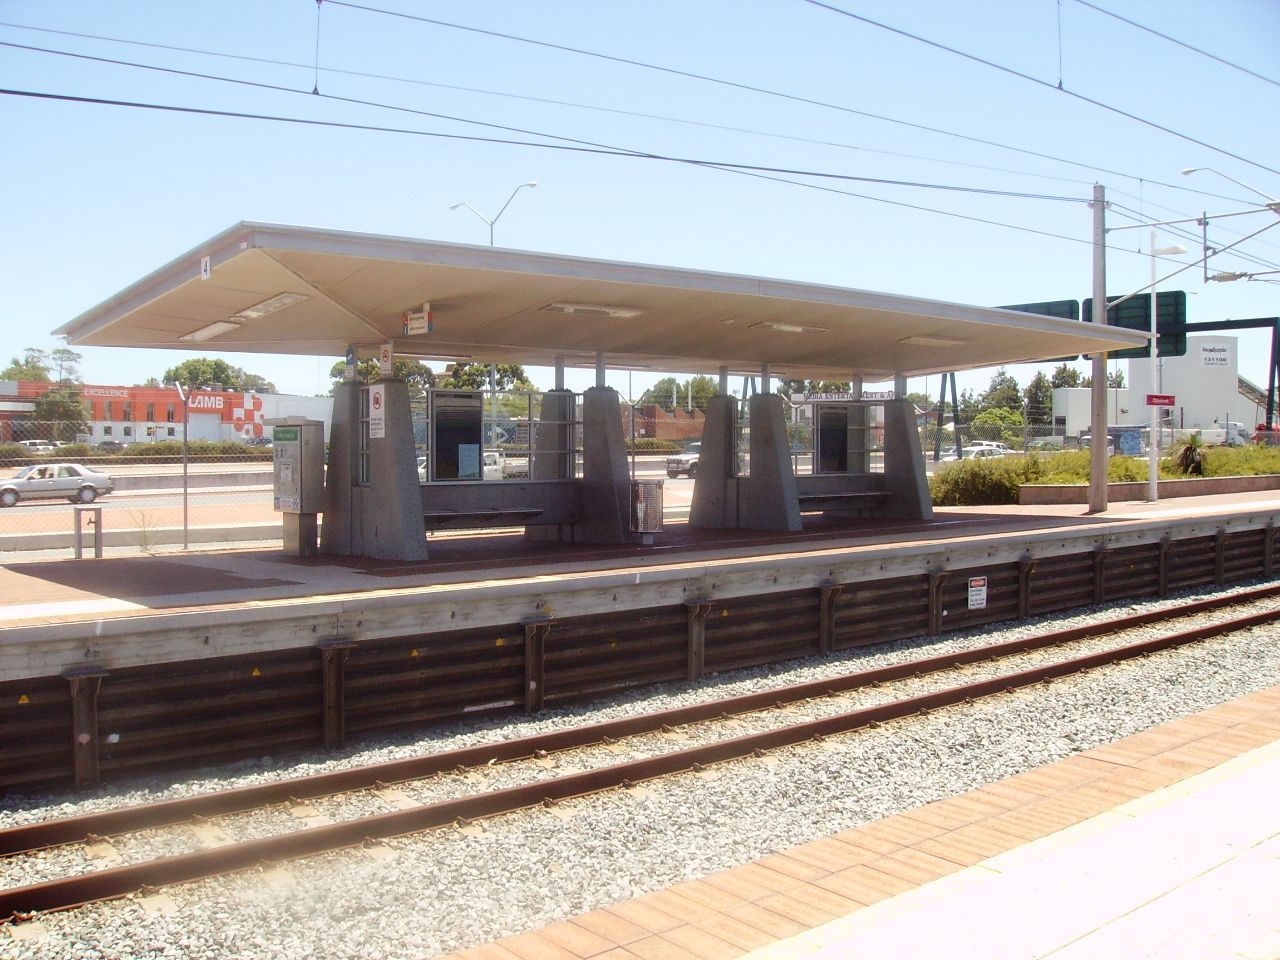 La stazione dove l'italiana è stata accoltellata a Perth